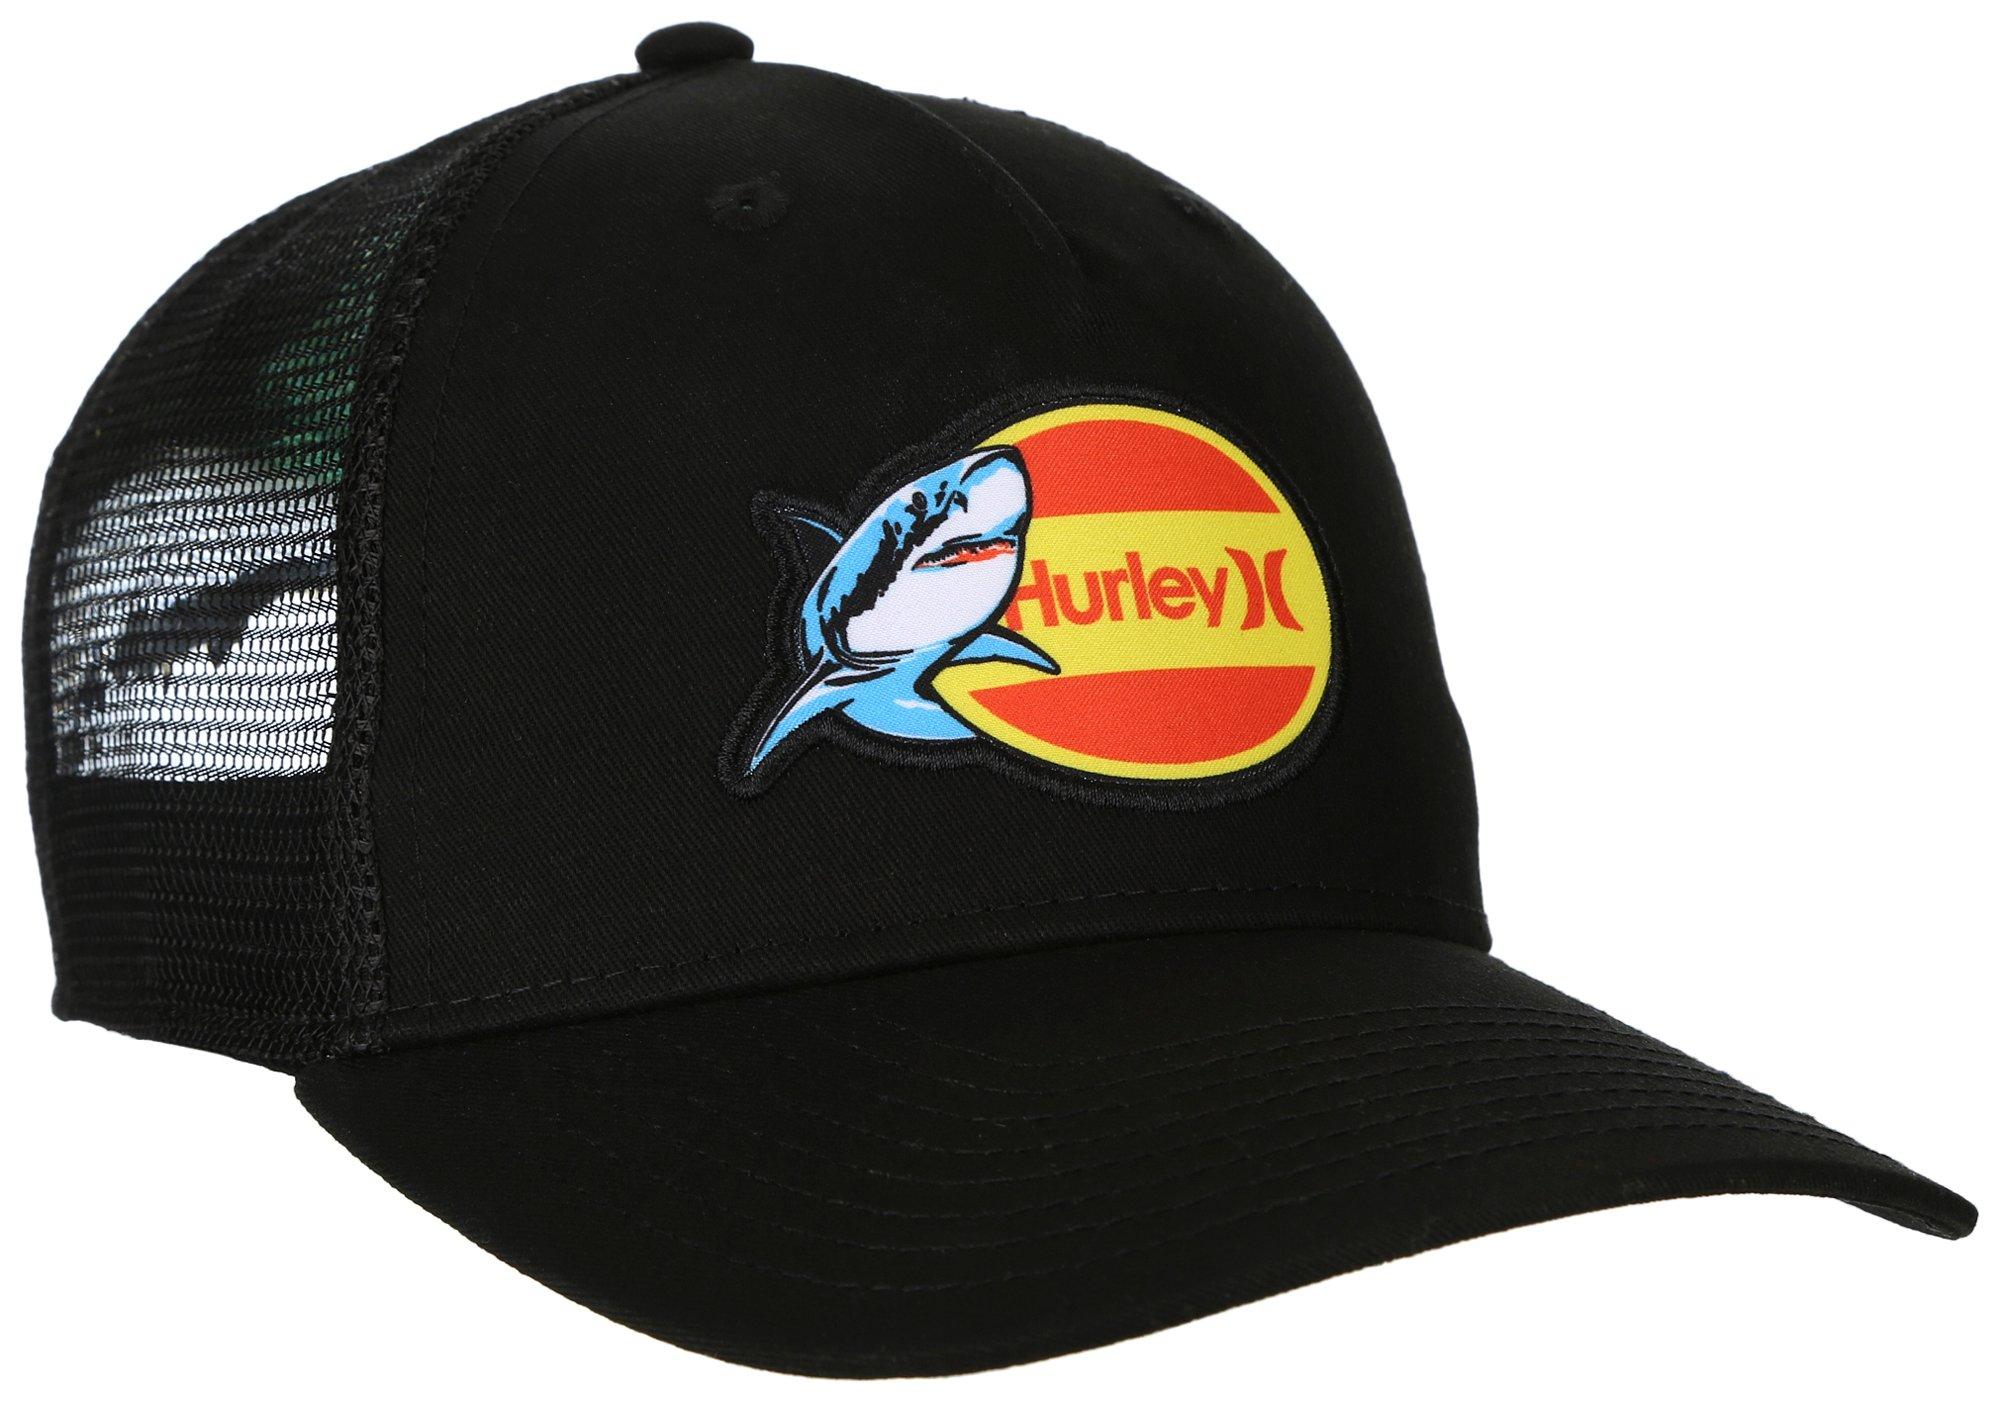 Boys Black Shark Trucker Hat